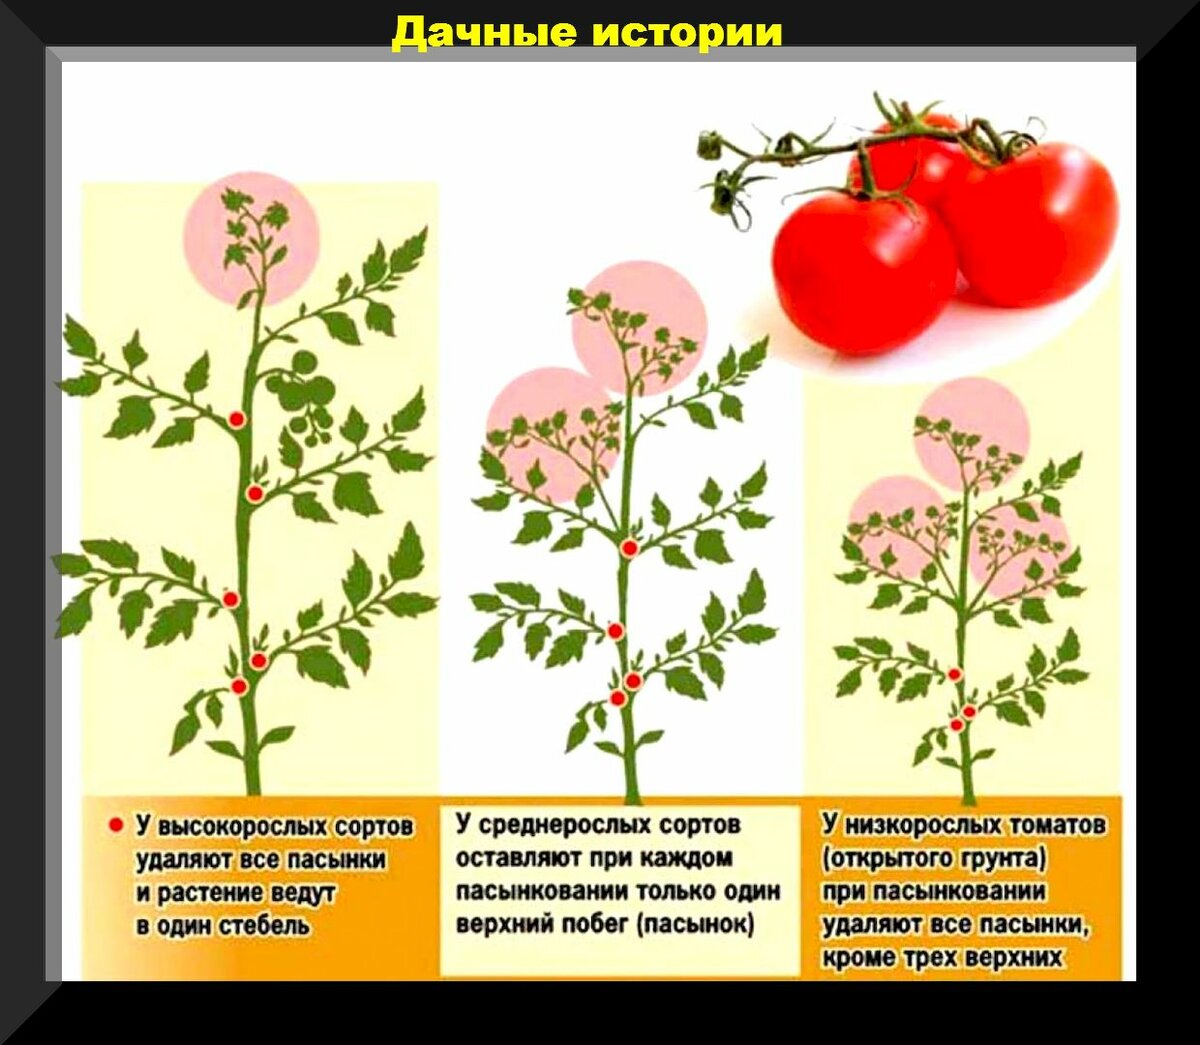 Пасынки на томатах: как правильно и когда их удалять. Правила проведения работ по формировке куста